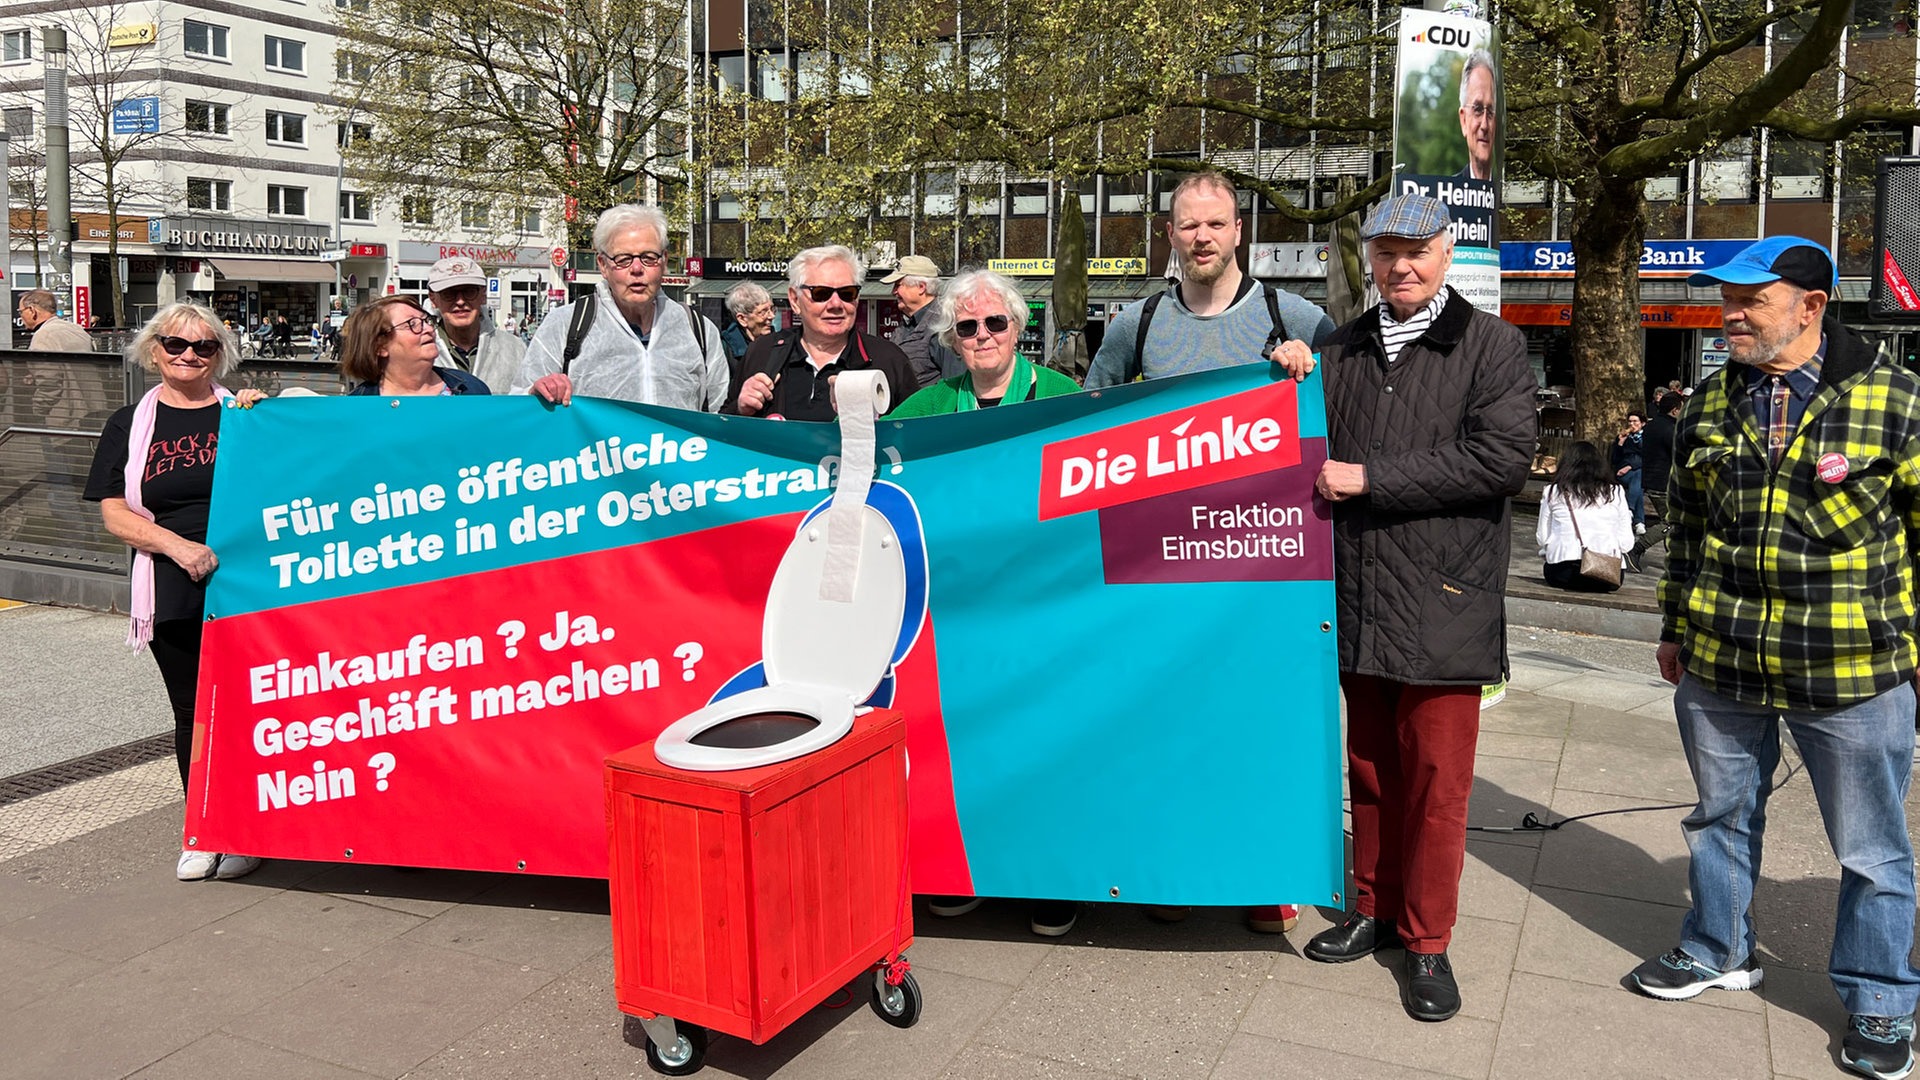 Klo-Demo für öffentliche Toilette in der Osterstraße